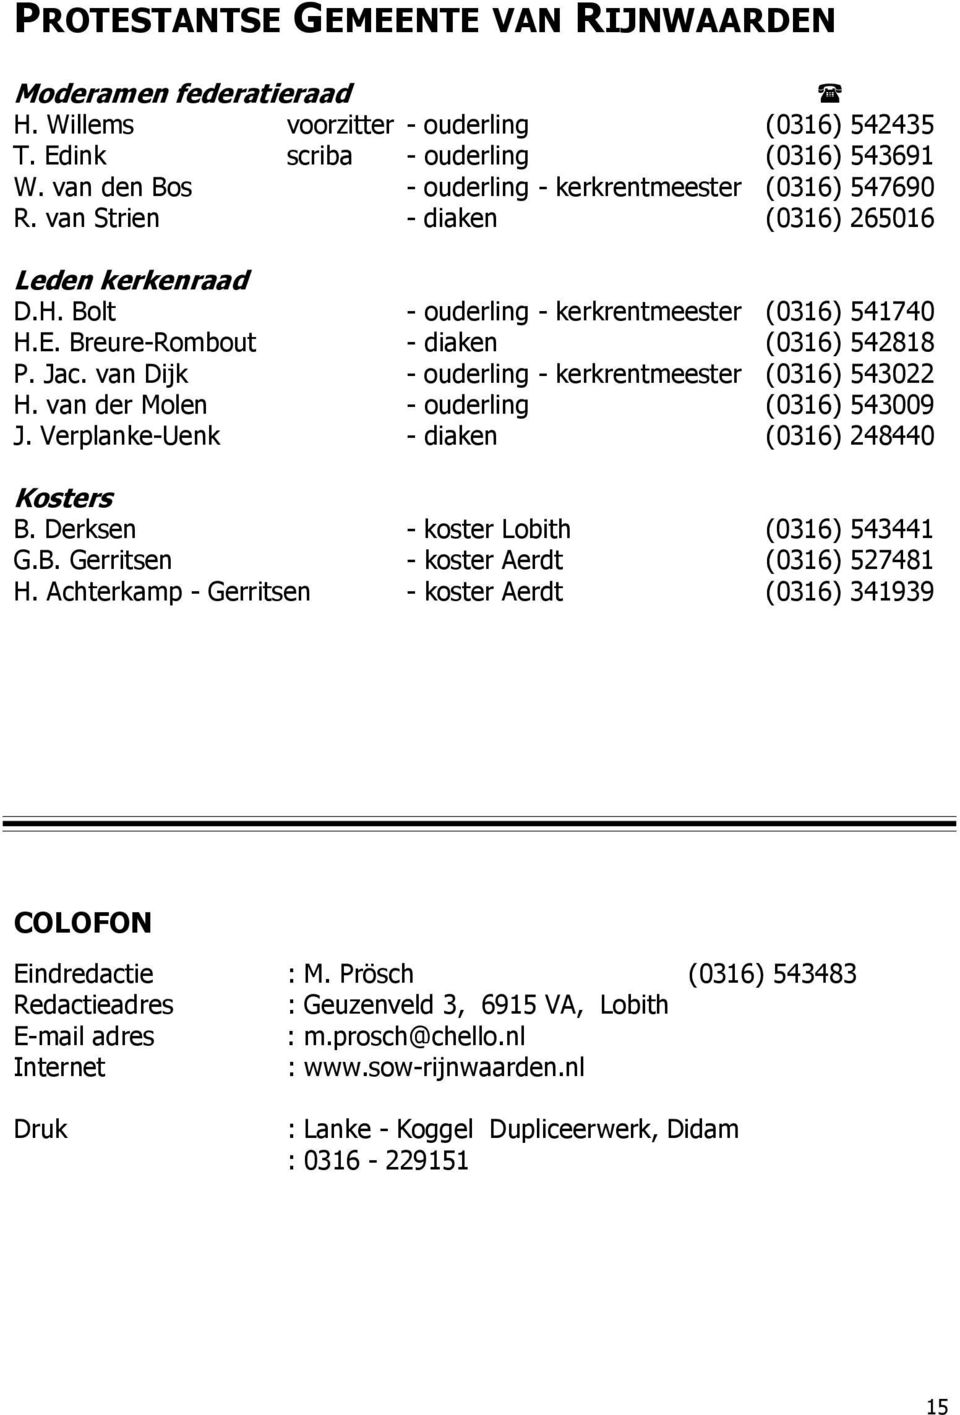 Breure-Rombout - diaken (0316) 542818 P. Jac. van Dijk - ouderling - kerkrentmeester (0316) 543022 H. van der Molen - ouderling (0316) 543009 J. Verplanke-Uenk - diaken (0316) 248440 Kosters B.